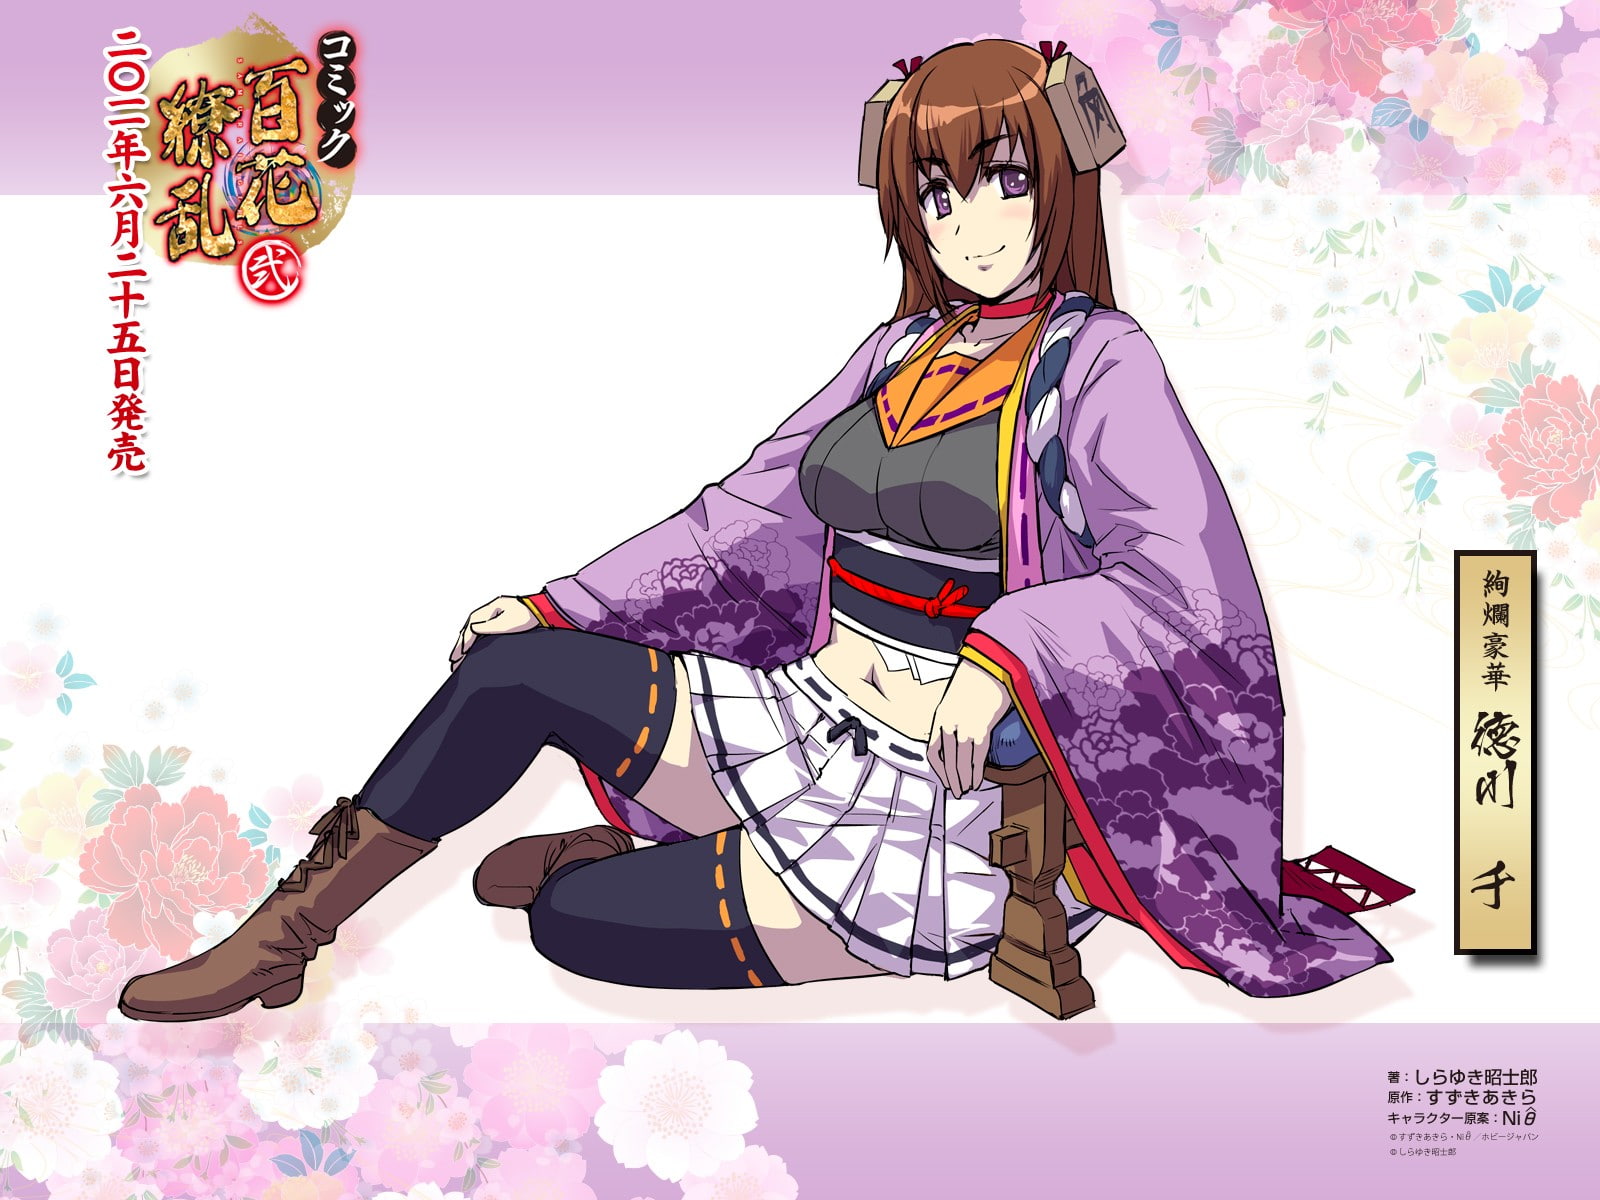 Hyakka Ryouran Samurai Girls, anime girls, Tokugawa Sen, thigh-highs